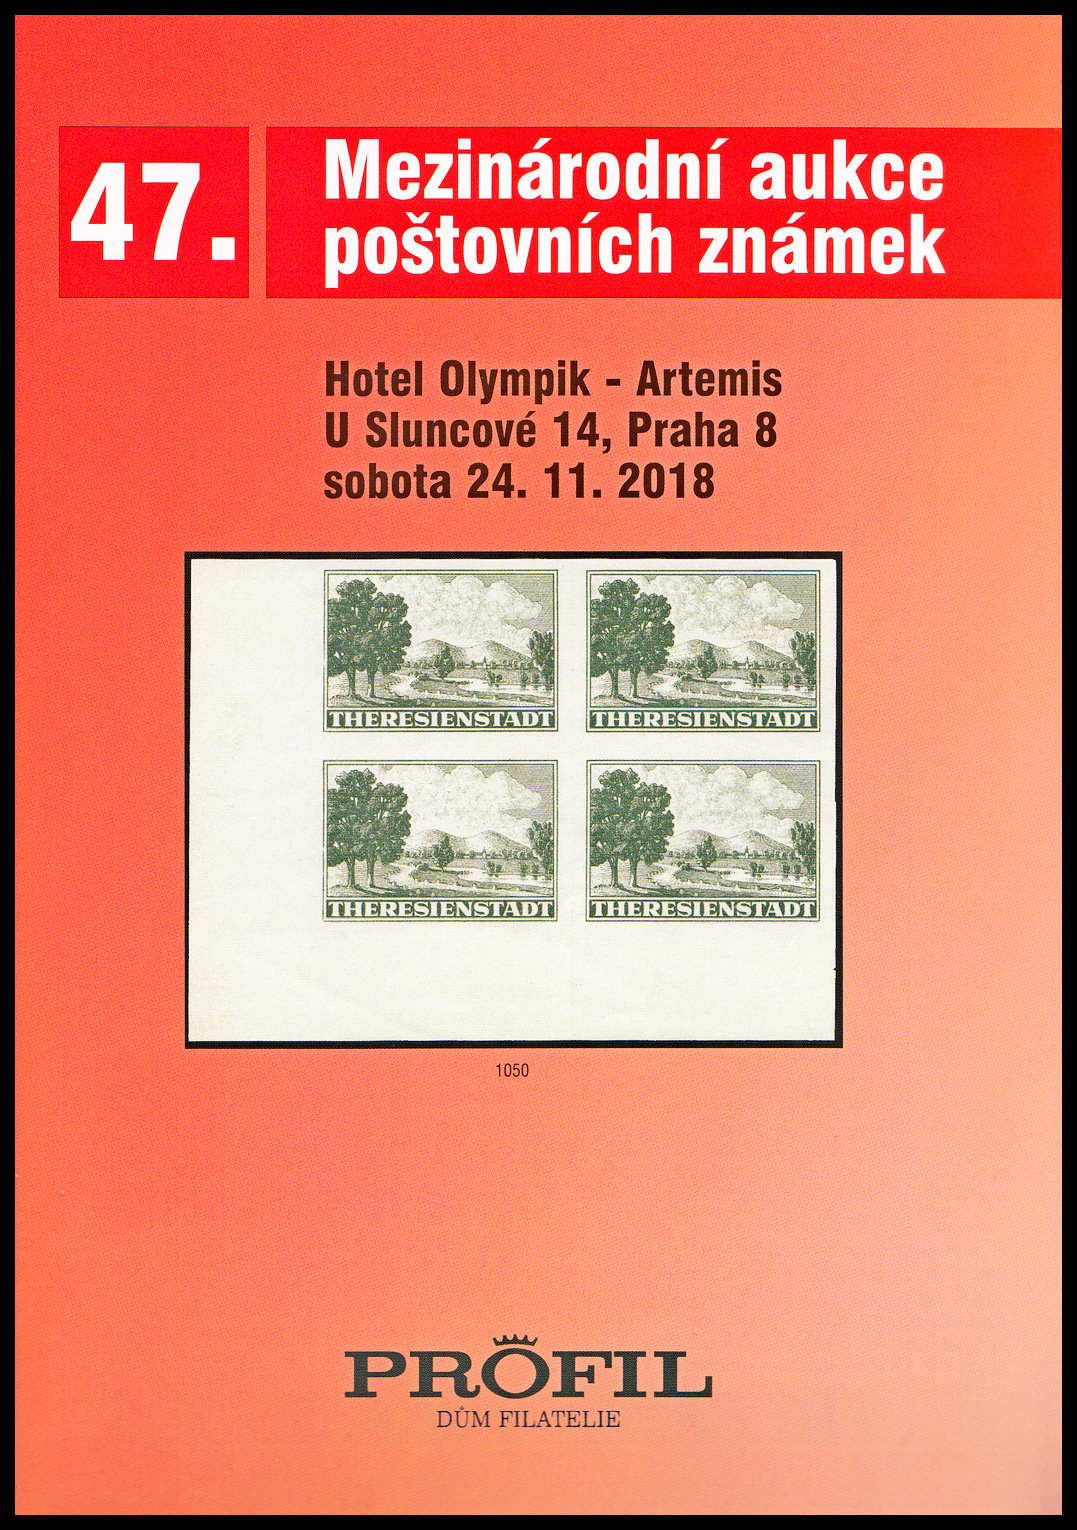 47. Aukce poštovních známek - Profil